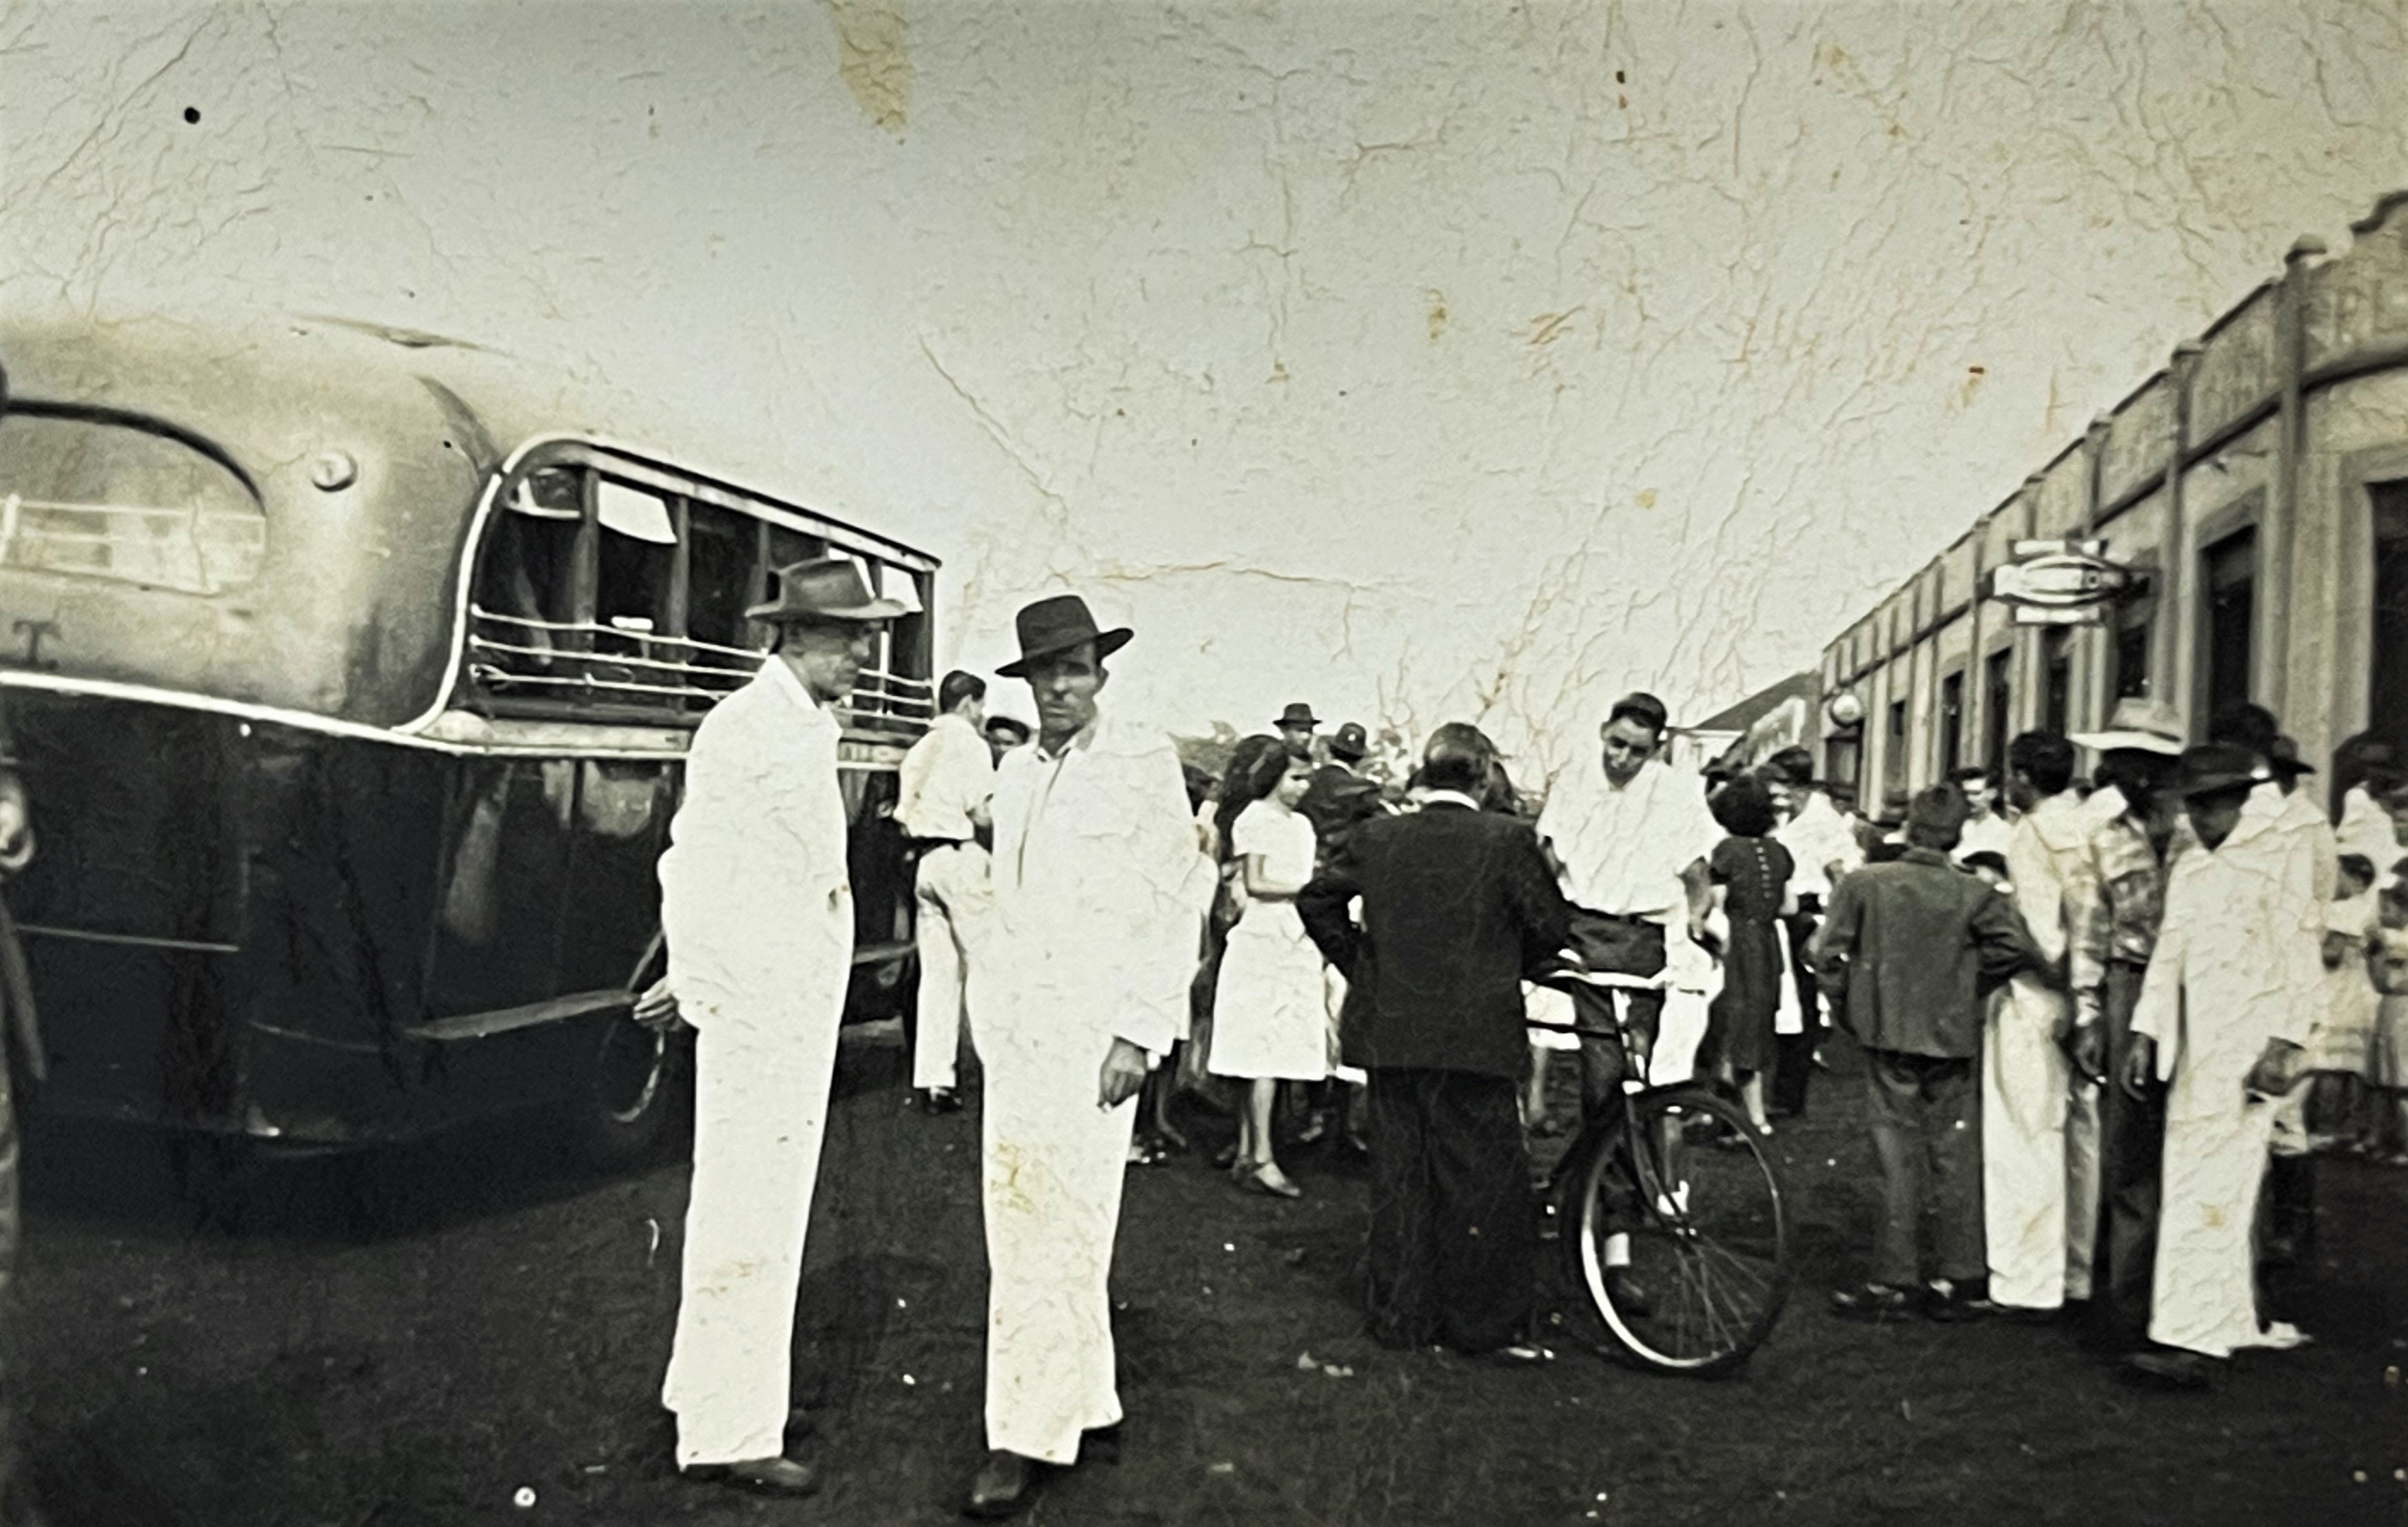 Avenida Brasil - Final dos anos 1940